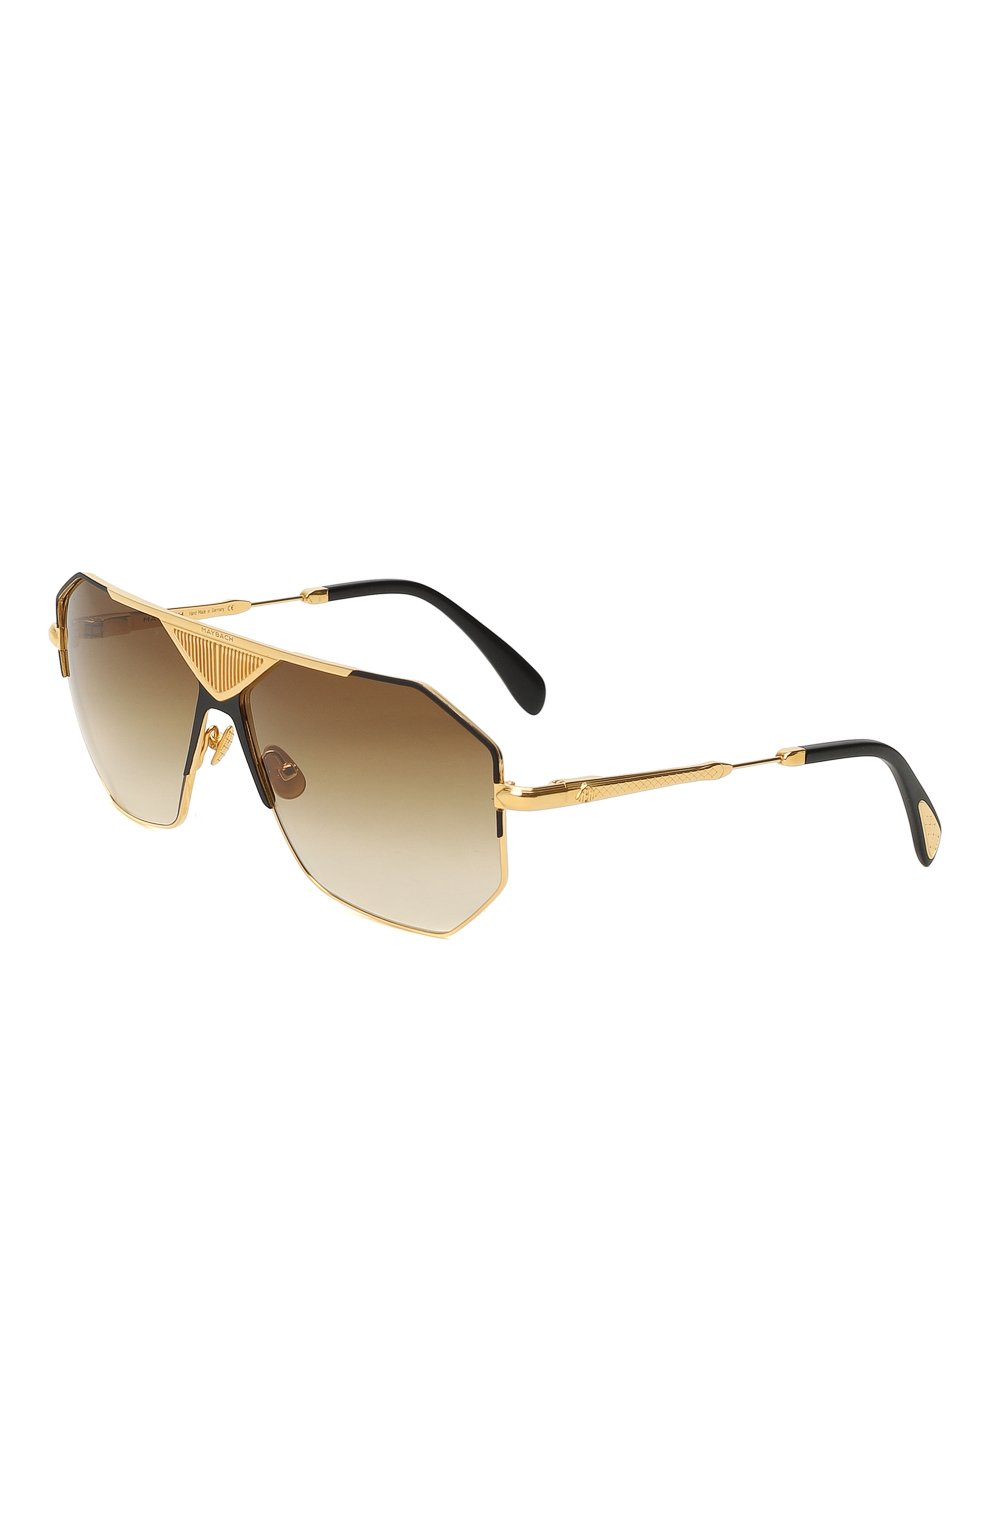 Солнцезащитные очки | Maybach | Золотой - 1